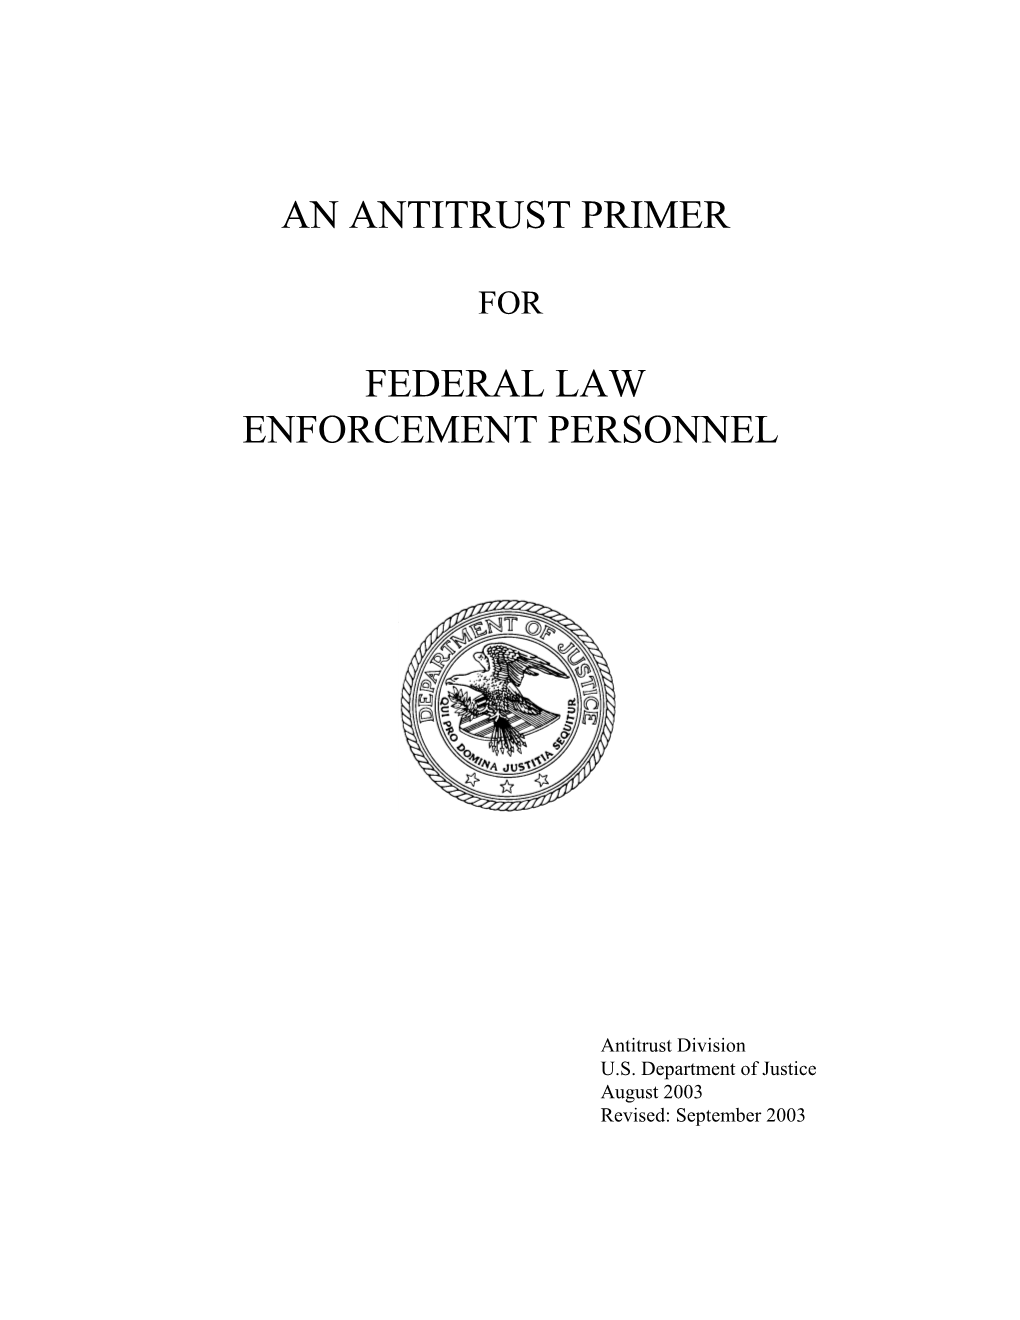 An Antitrust Primer for Federal Law Enforcement Personnel